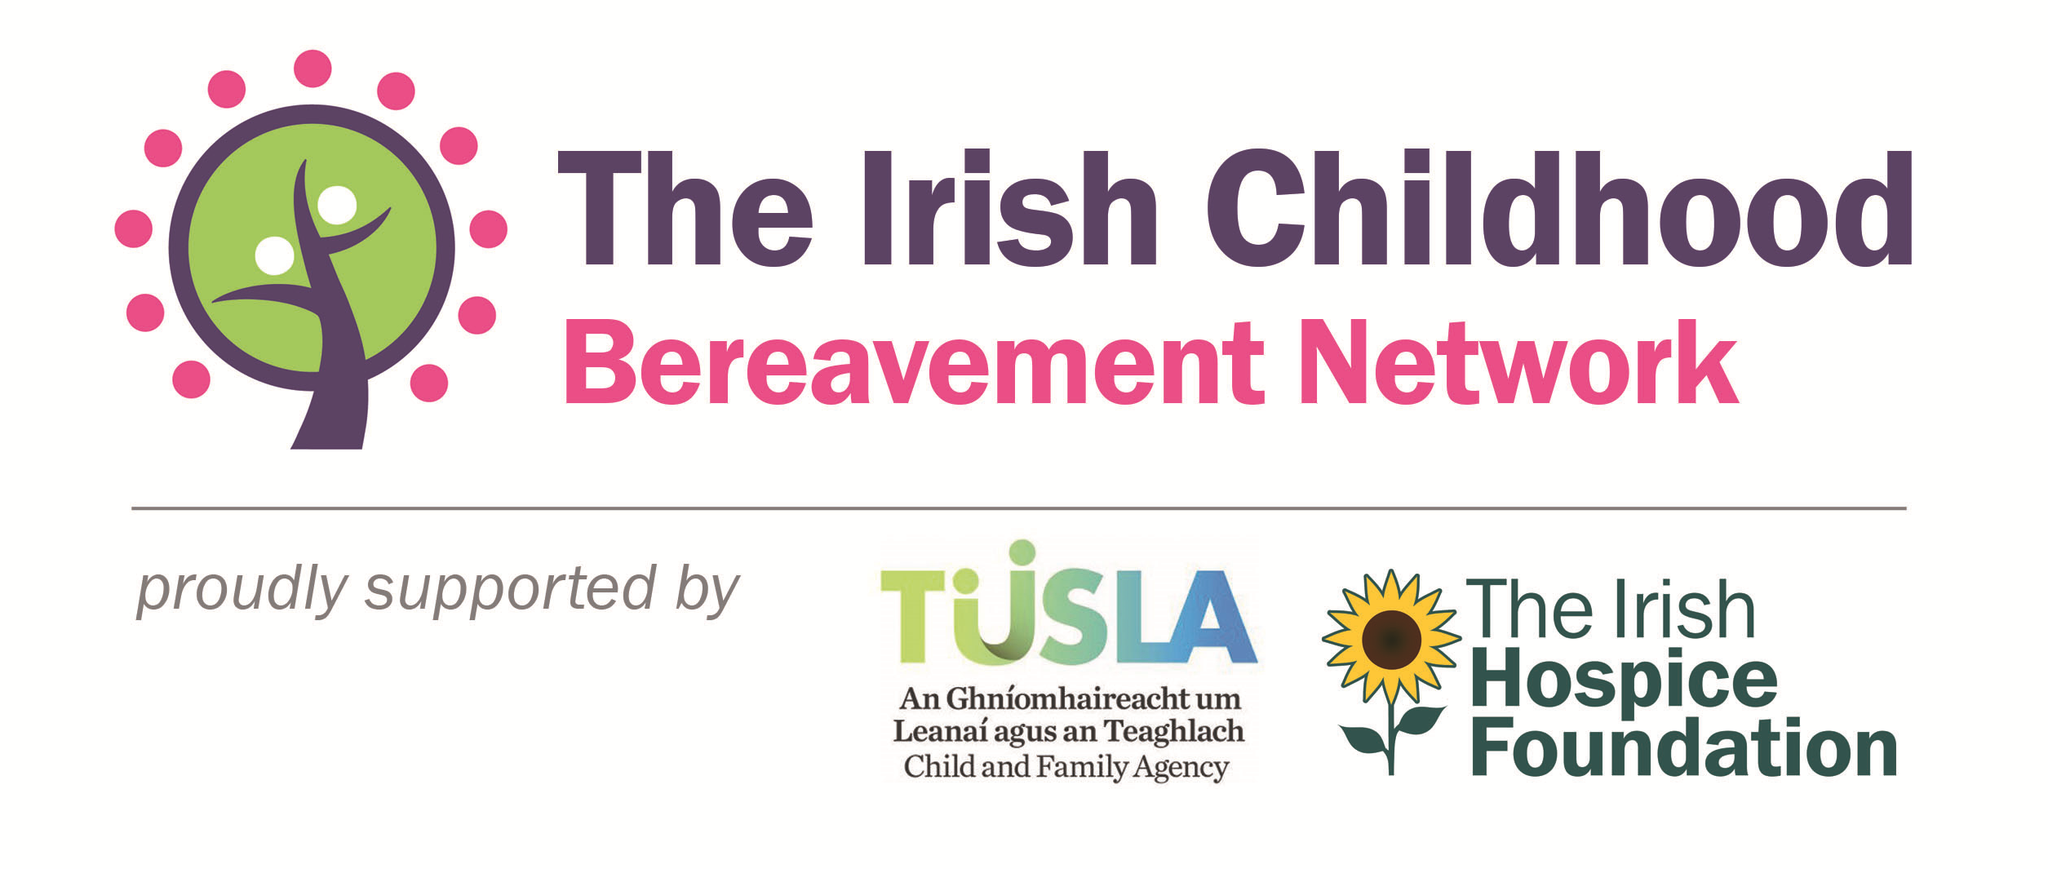 The Irish Childhood Bereavement Network